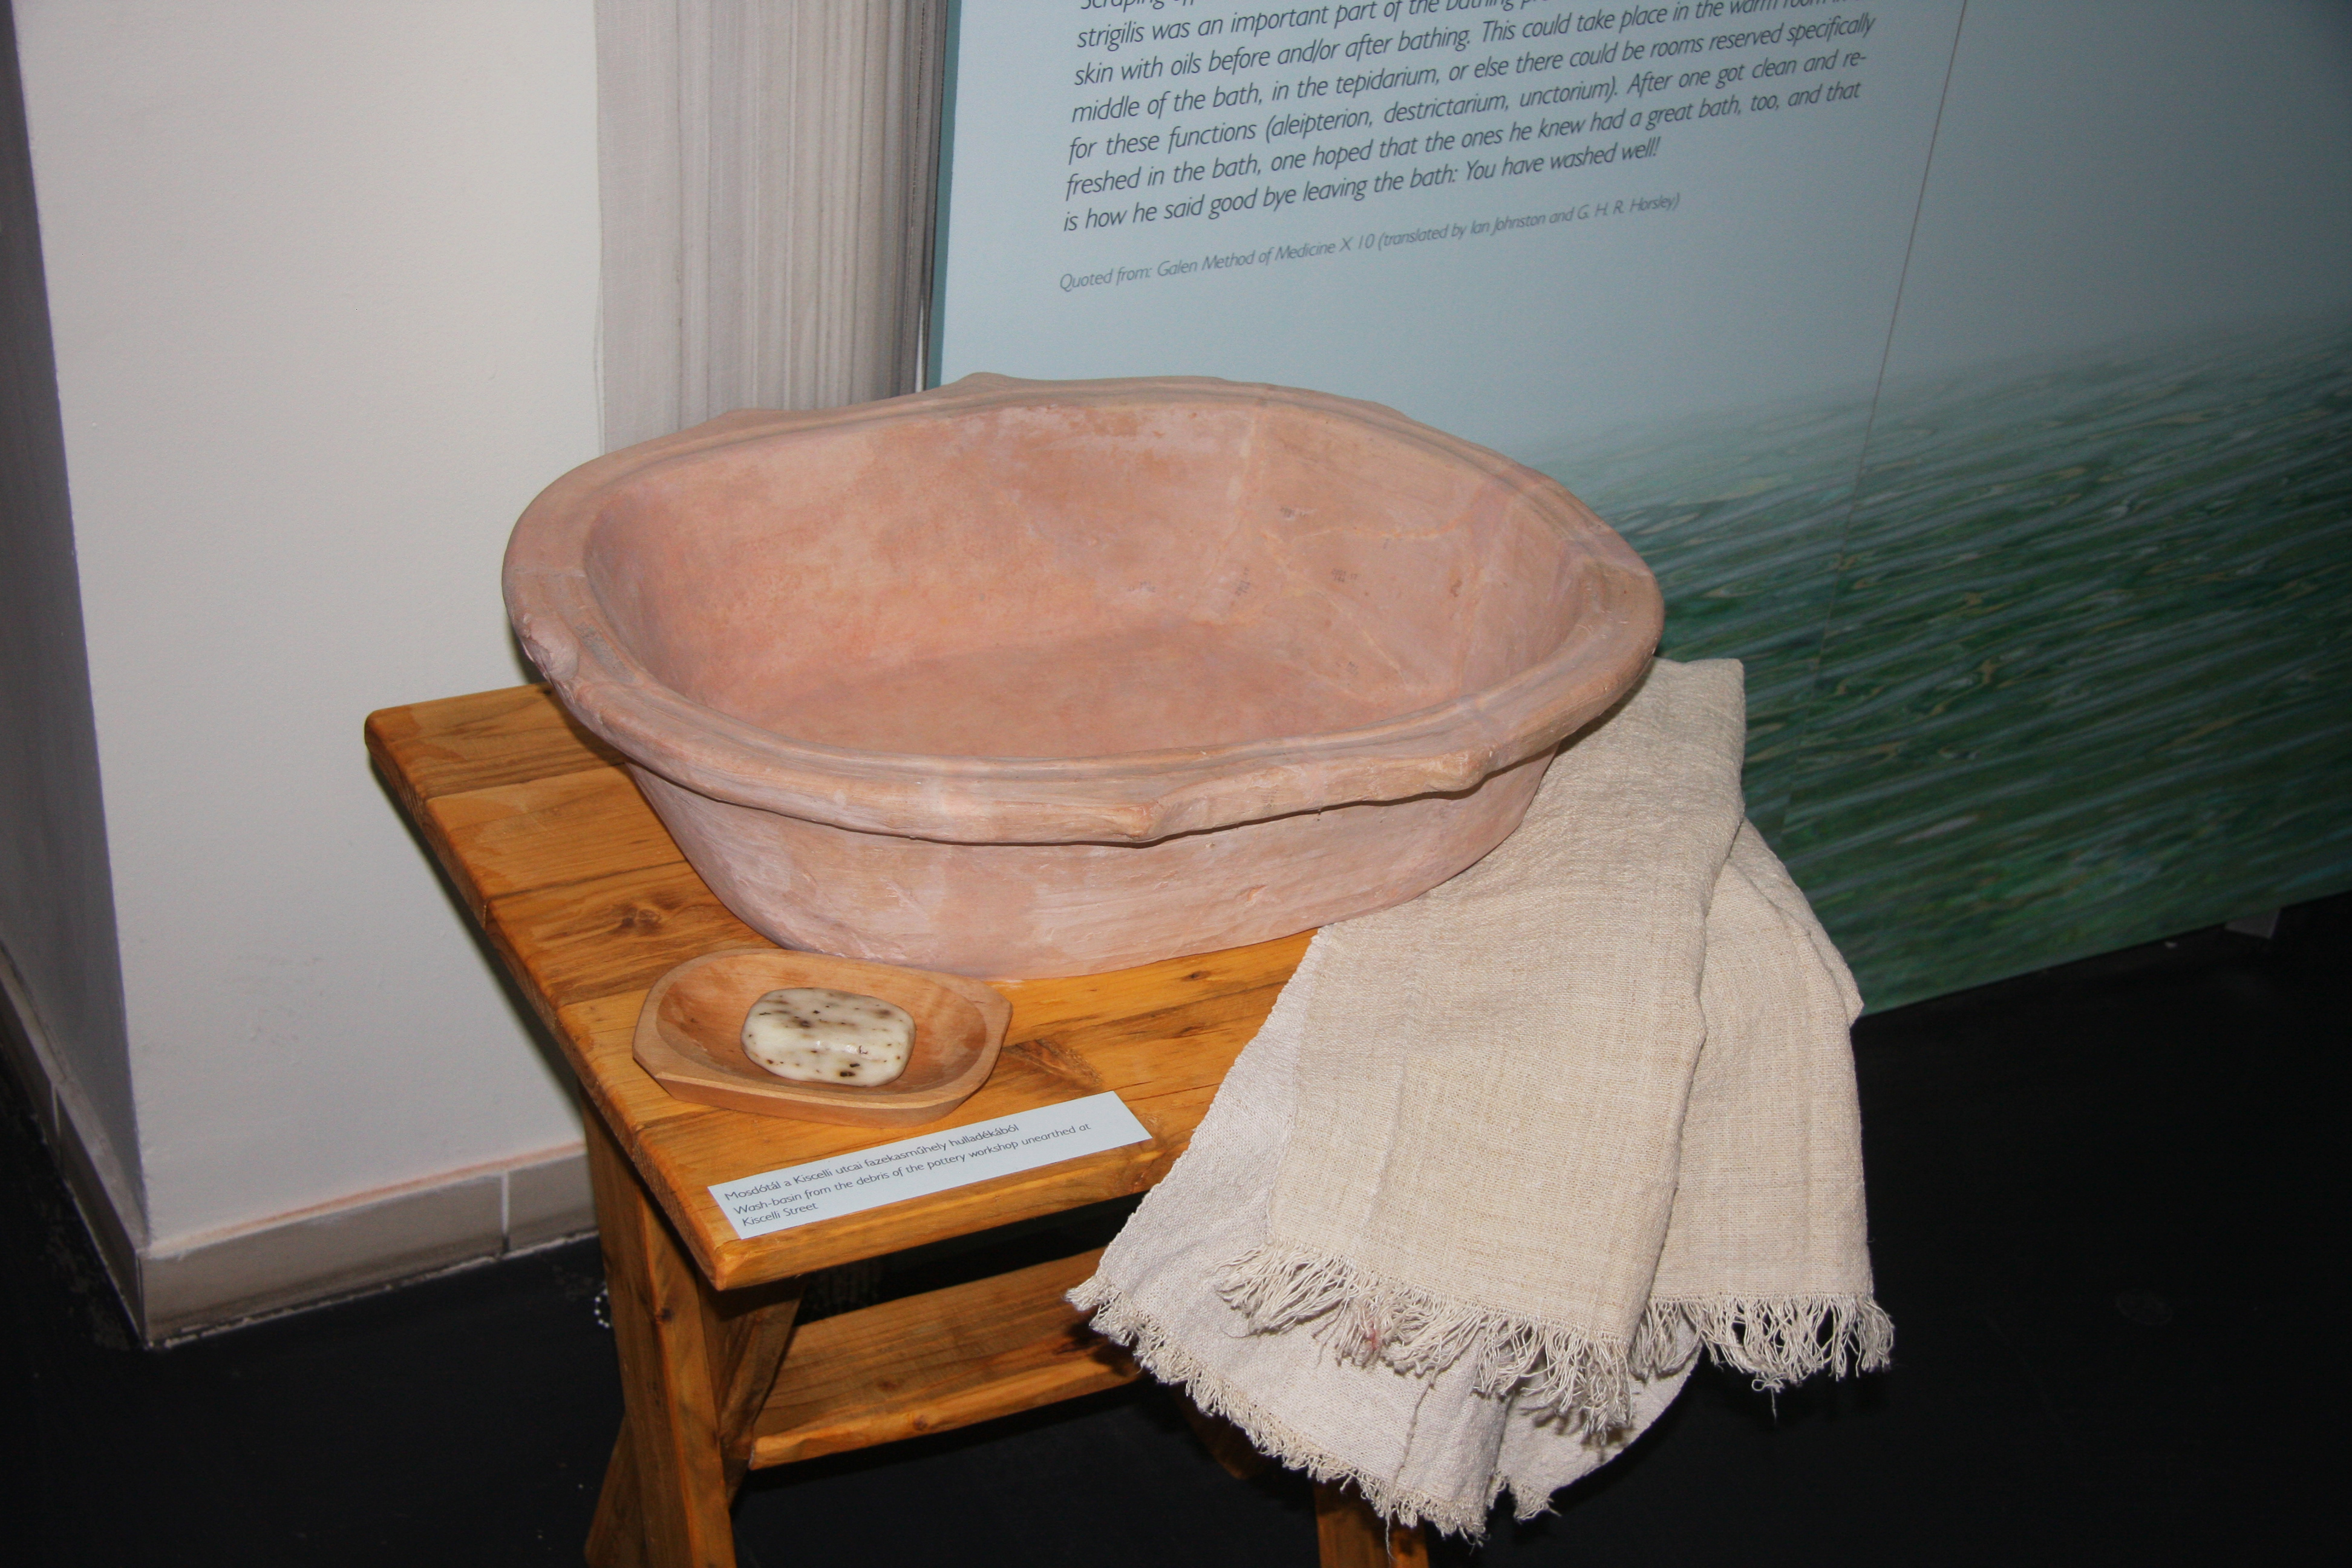 Miért jártak a rómaiak fürdőbe? – A wellness és fürdőkultúra érdekes emlékei az Aquincumban